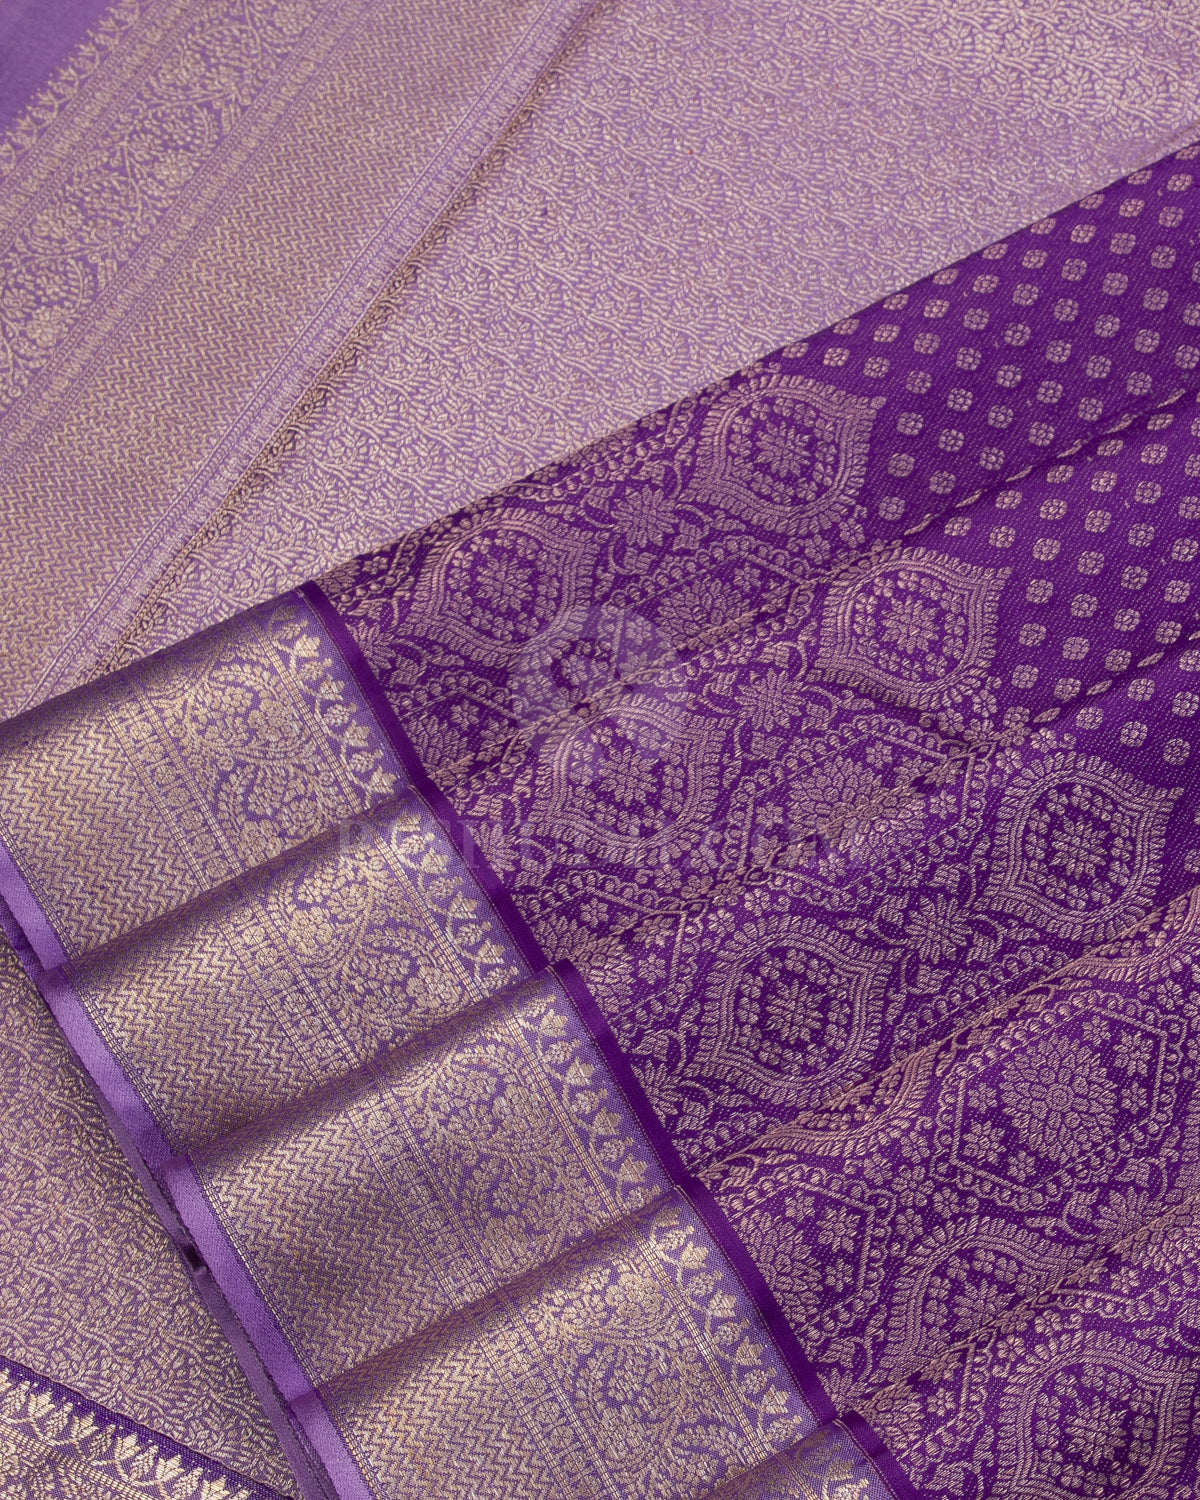 Shades of Lavender kanjivaram Silk Saree - D513(B) - View 3